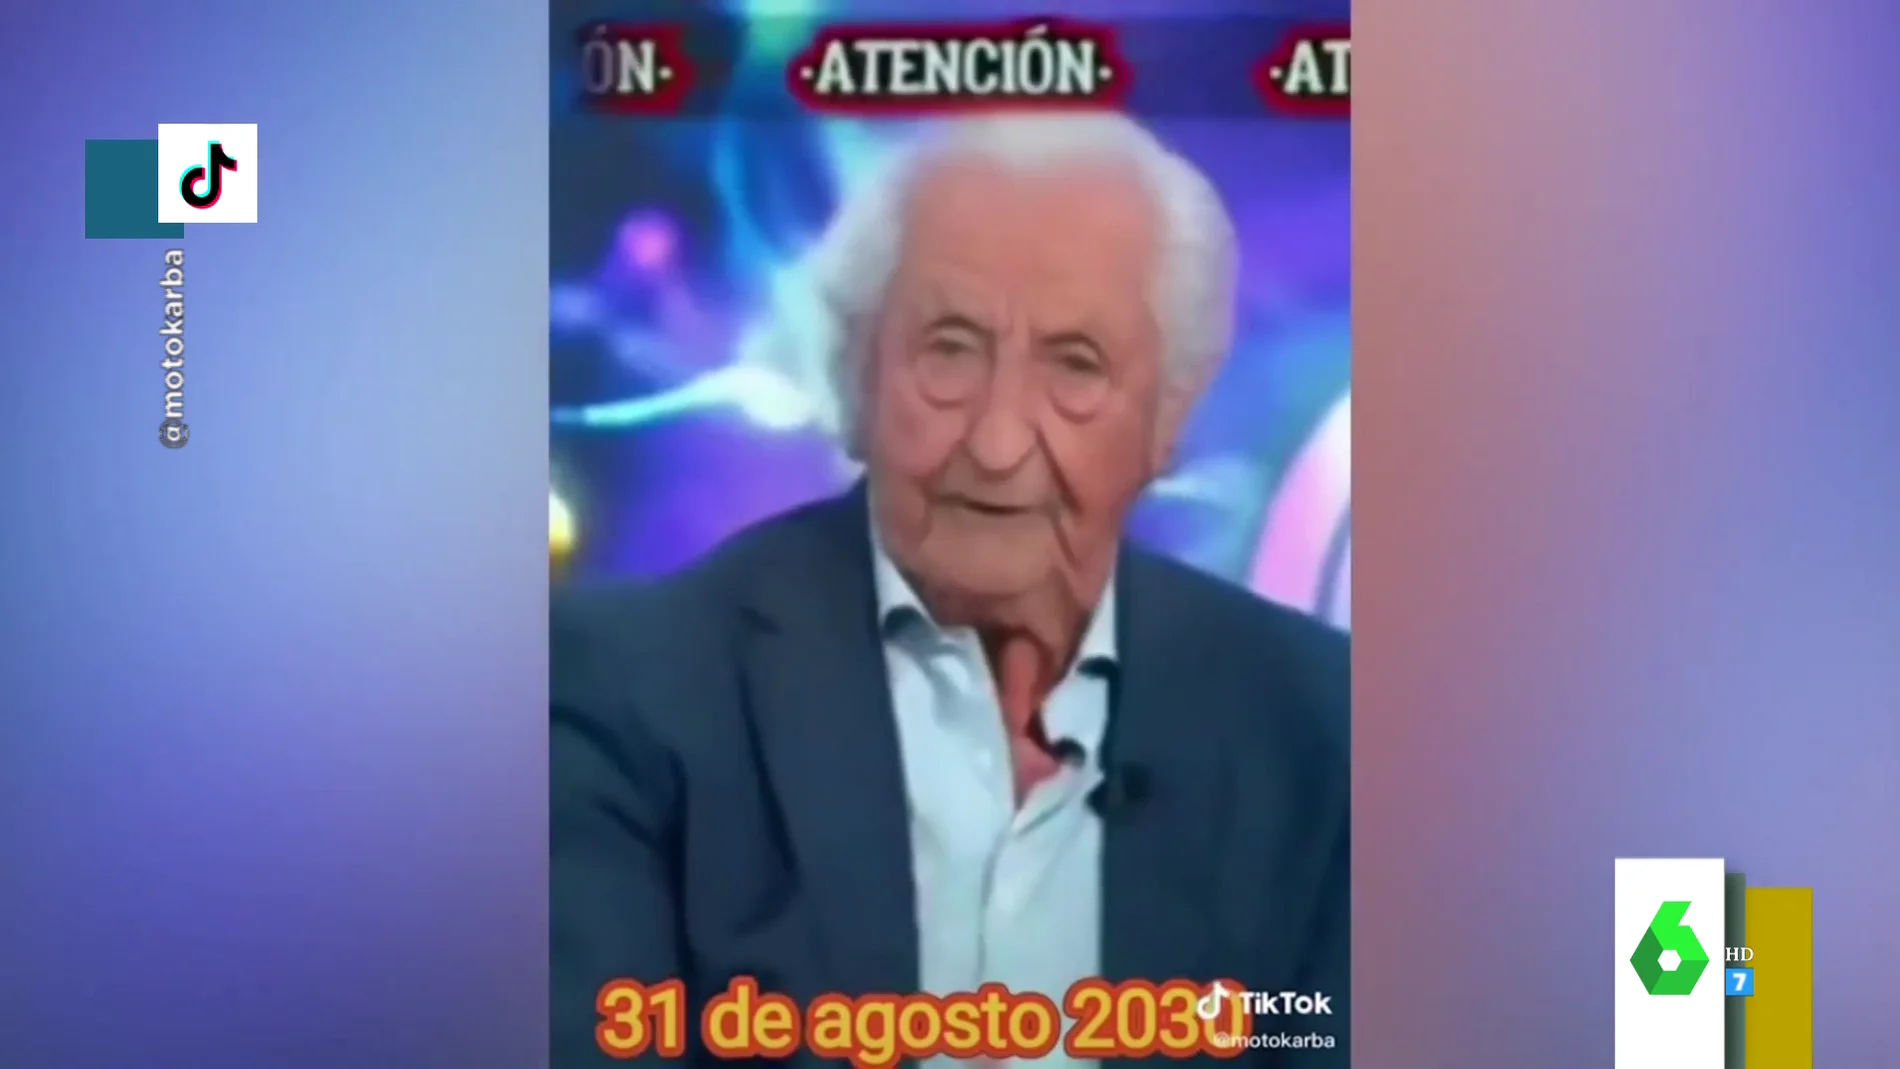 La reacción de Josep Pedrerol al vídeo viral de Tik Tok que le muestra de viejo